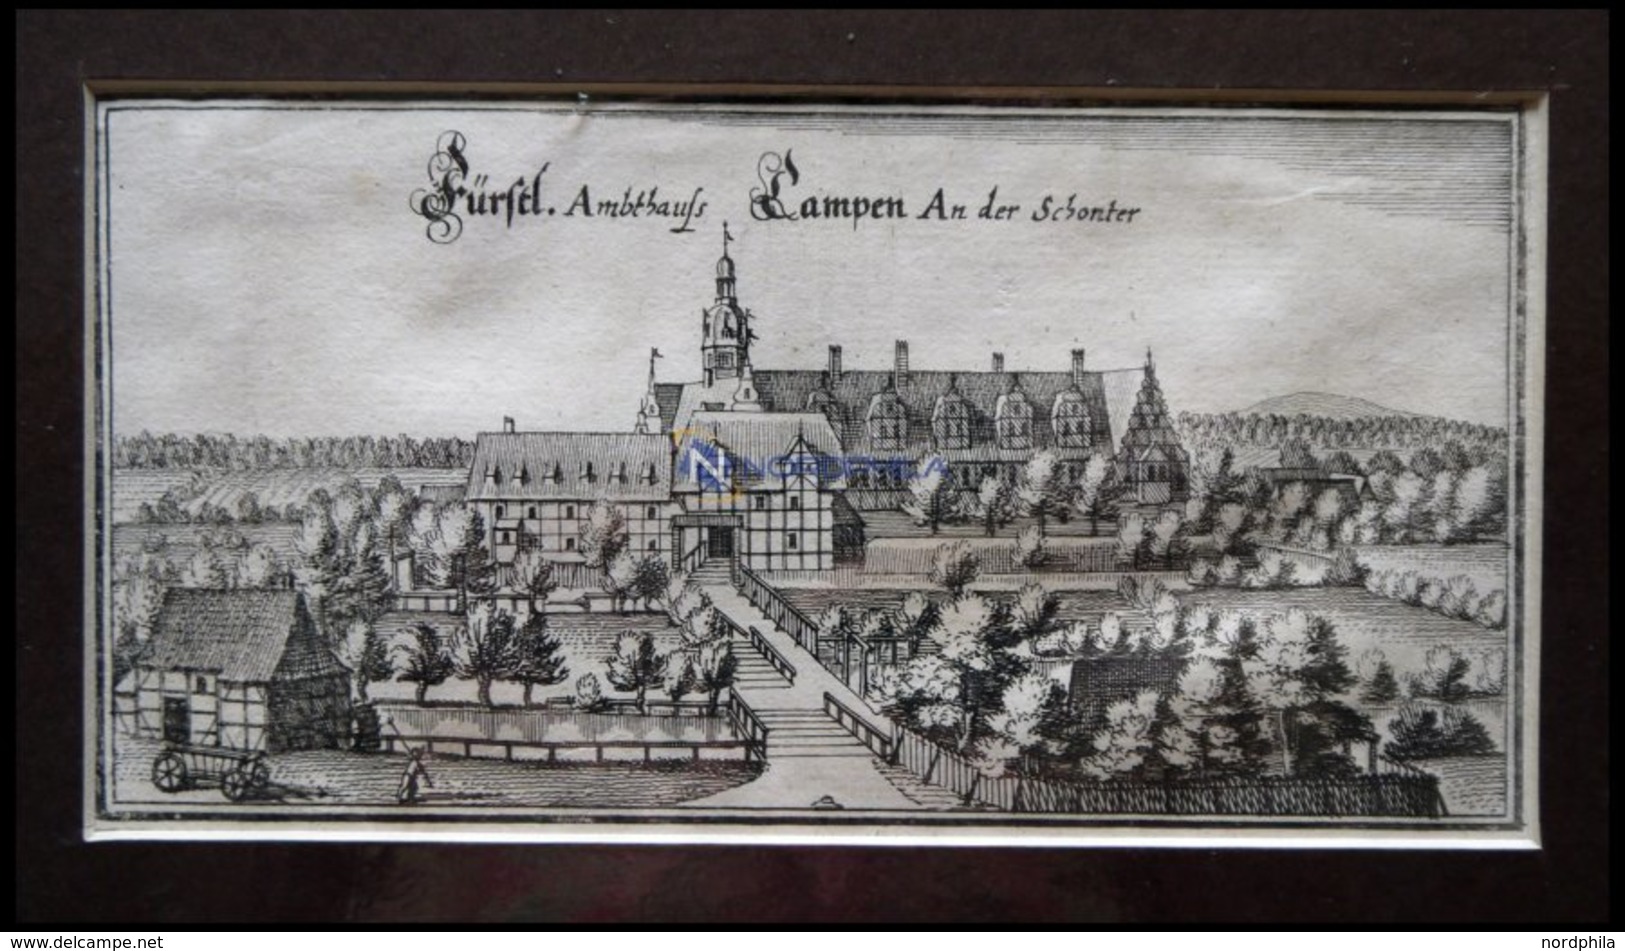 CAMPEN: Das Fürstliche Amtshaus An Der Schonter,Kupferstich Von Merian Um 1645 - Lithographies